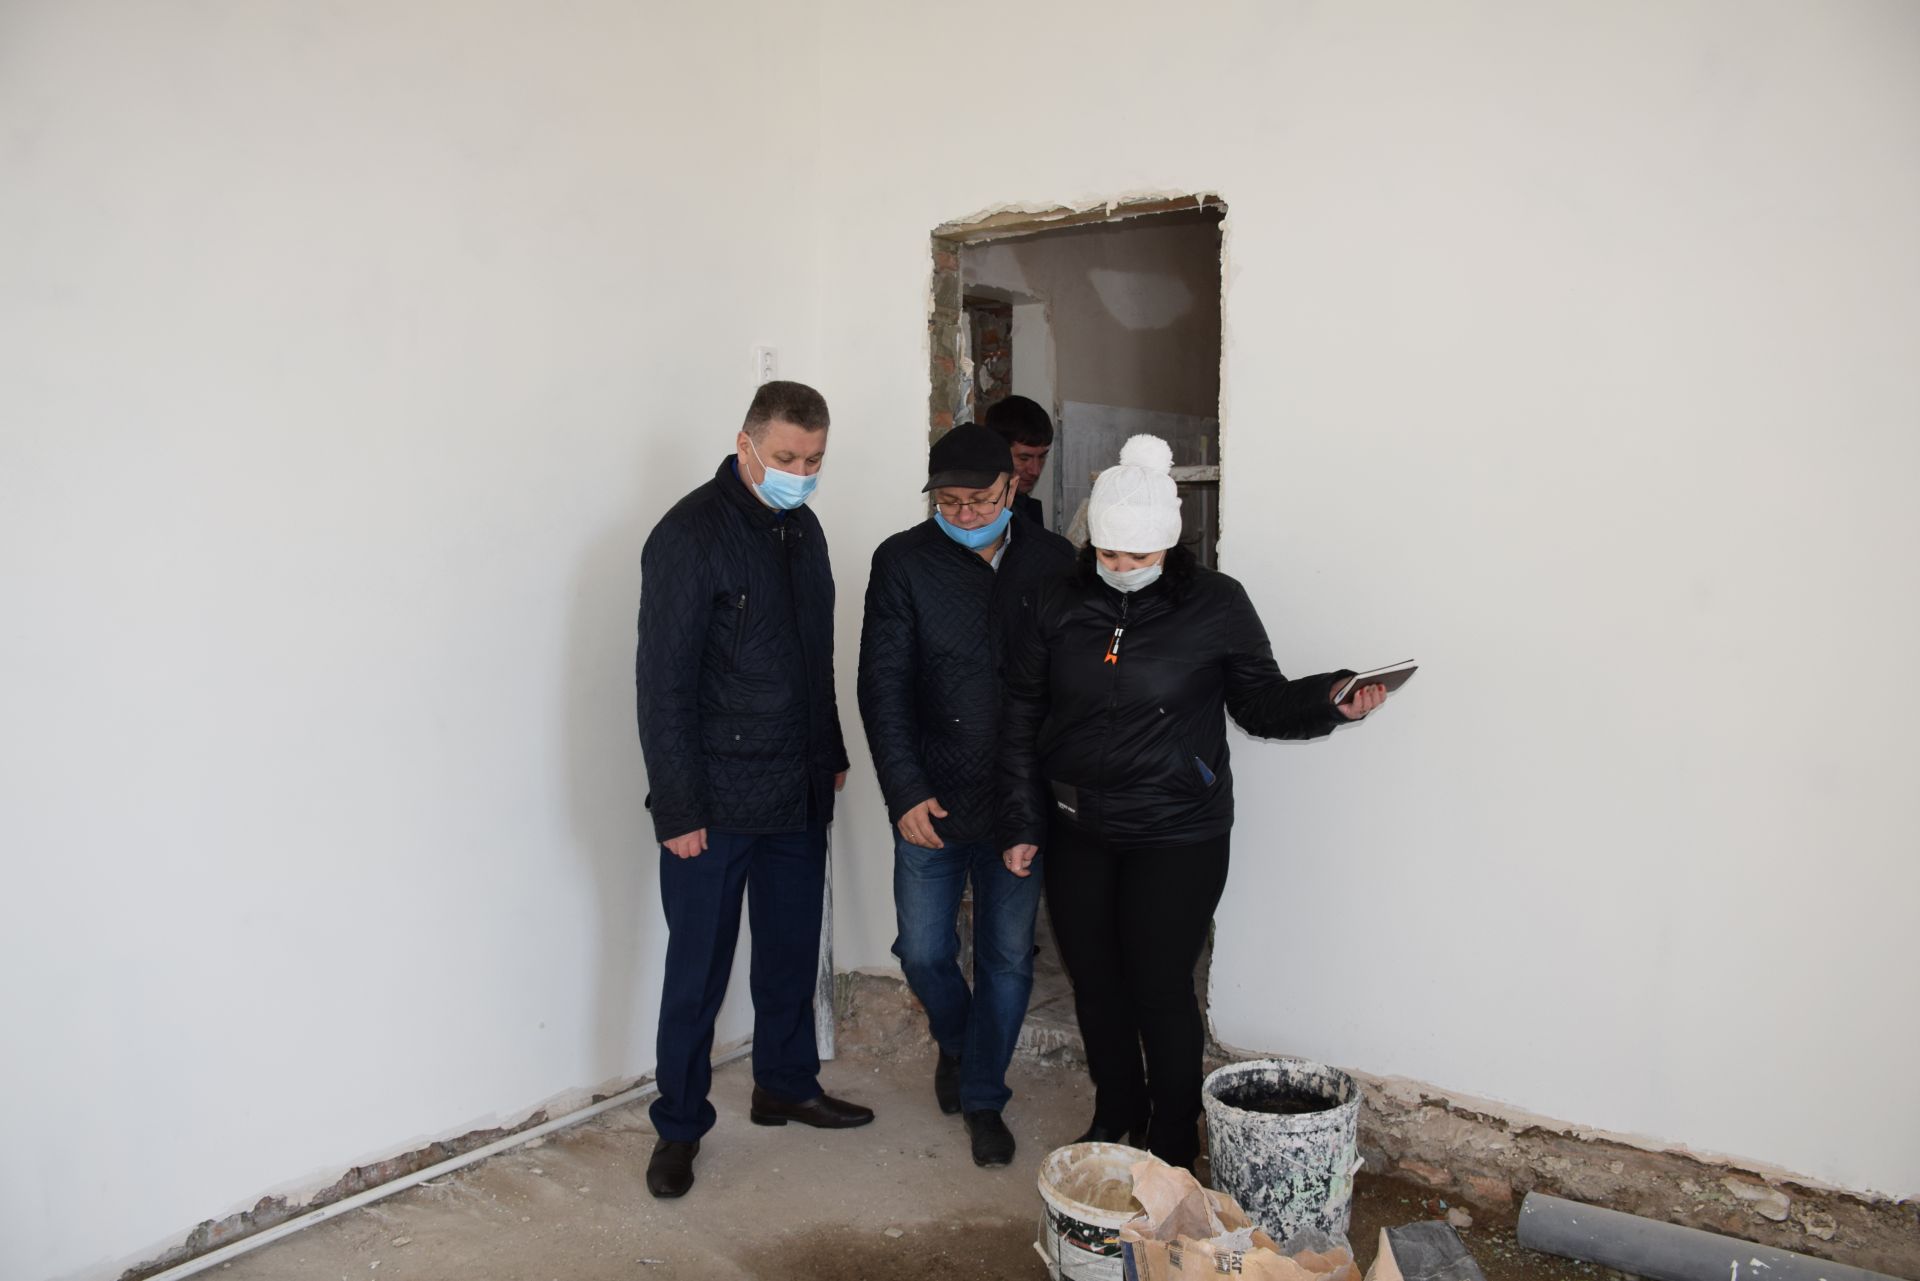 Глава Нурлатского района посетил дошкольное учреждение, где ведется капитальный ремонт